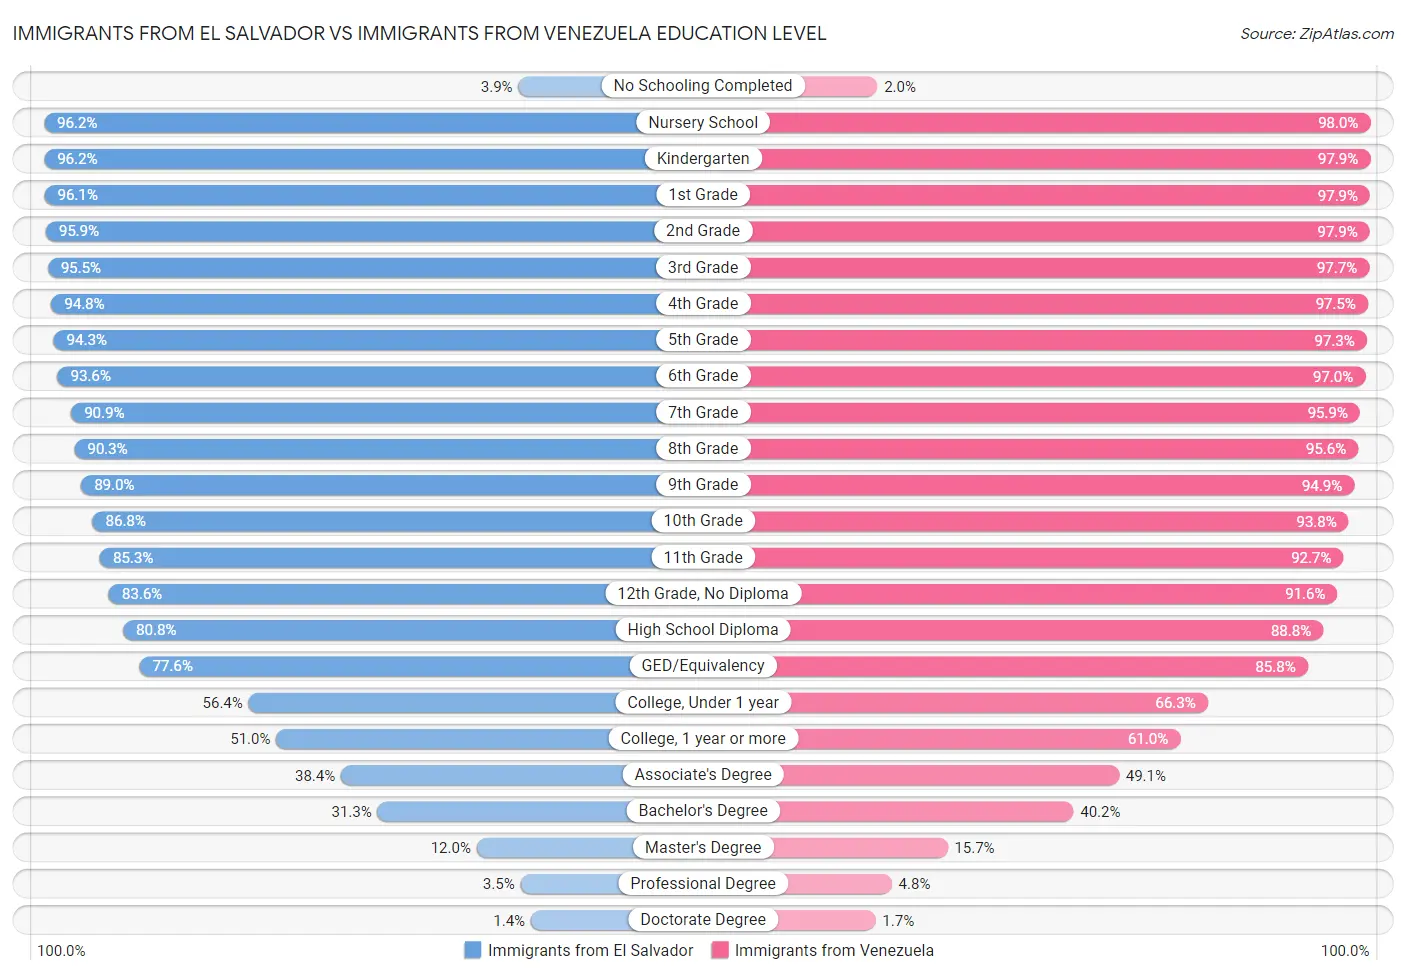 Immigrants from El Salvador vs Immigrants from Venezuela Education Level